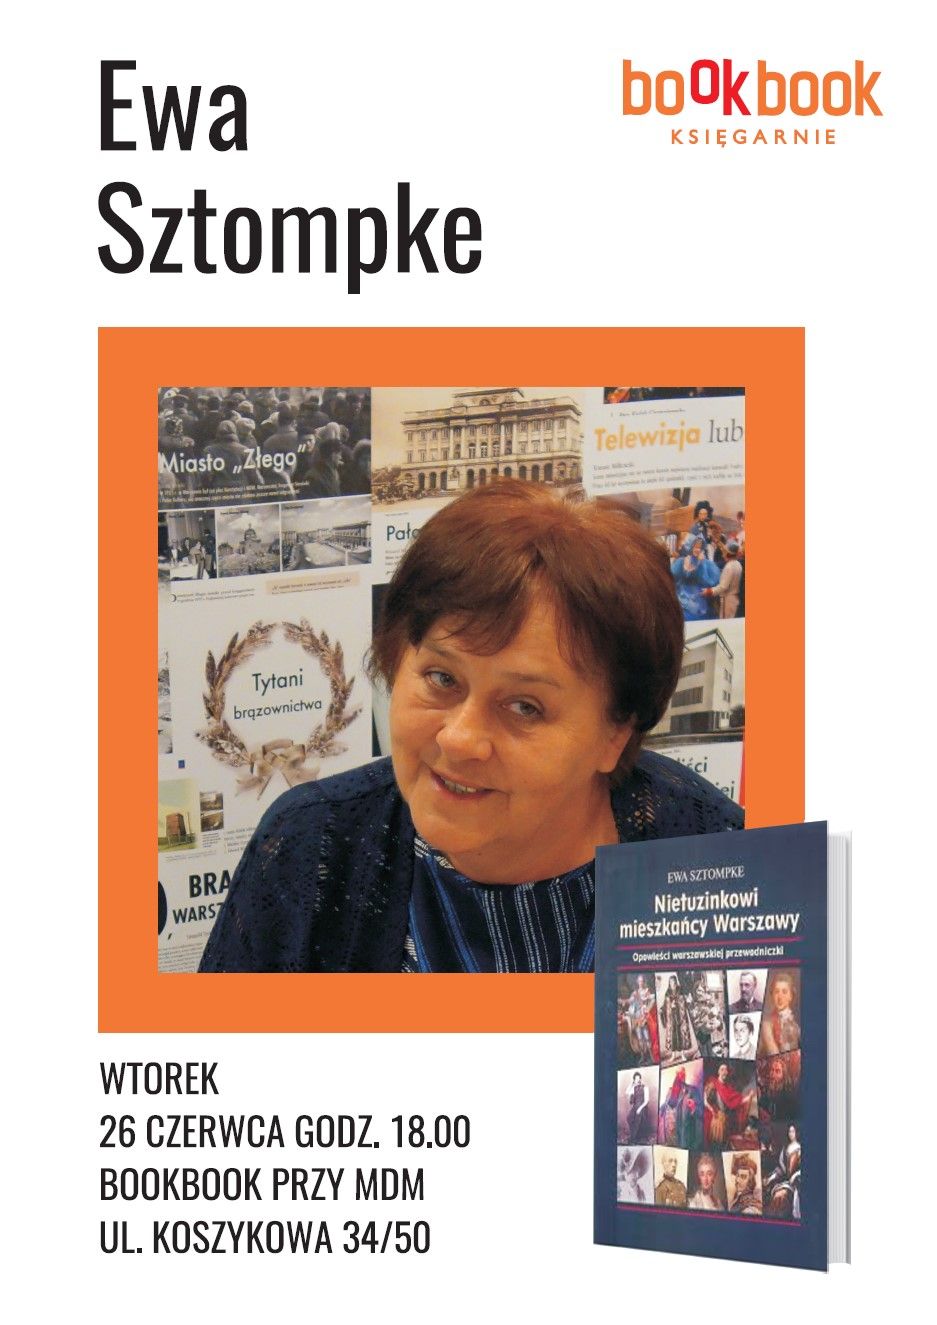 Ewa Sztompke, "Nietuzinkowi mieszkańcy Warszawy. Opowieści warszawskiej przewodniczki", 